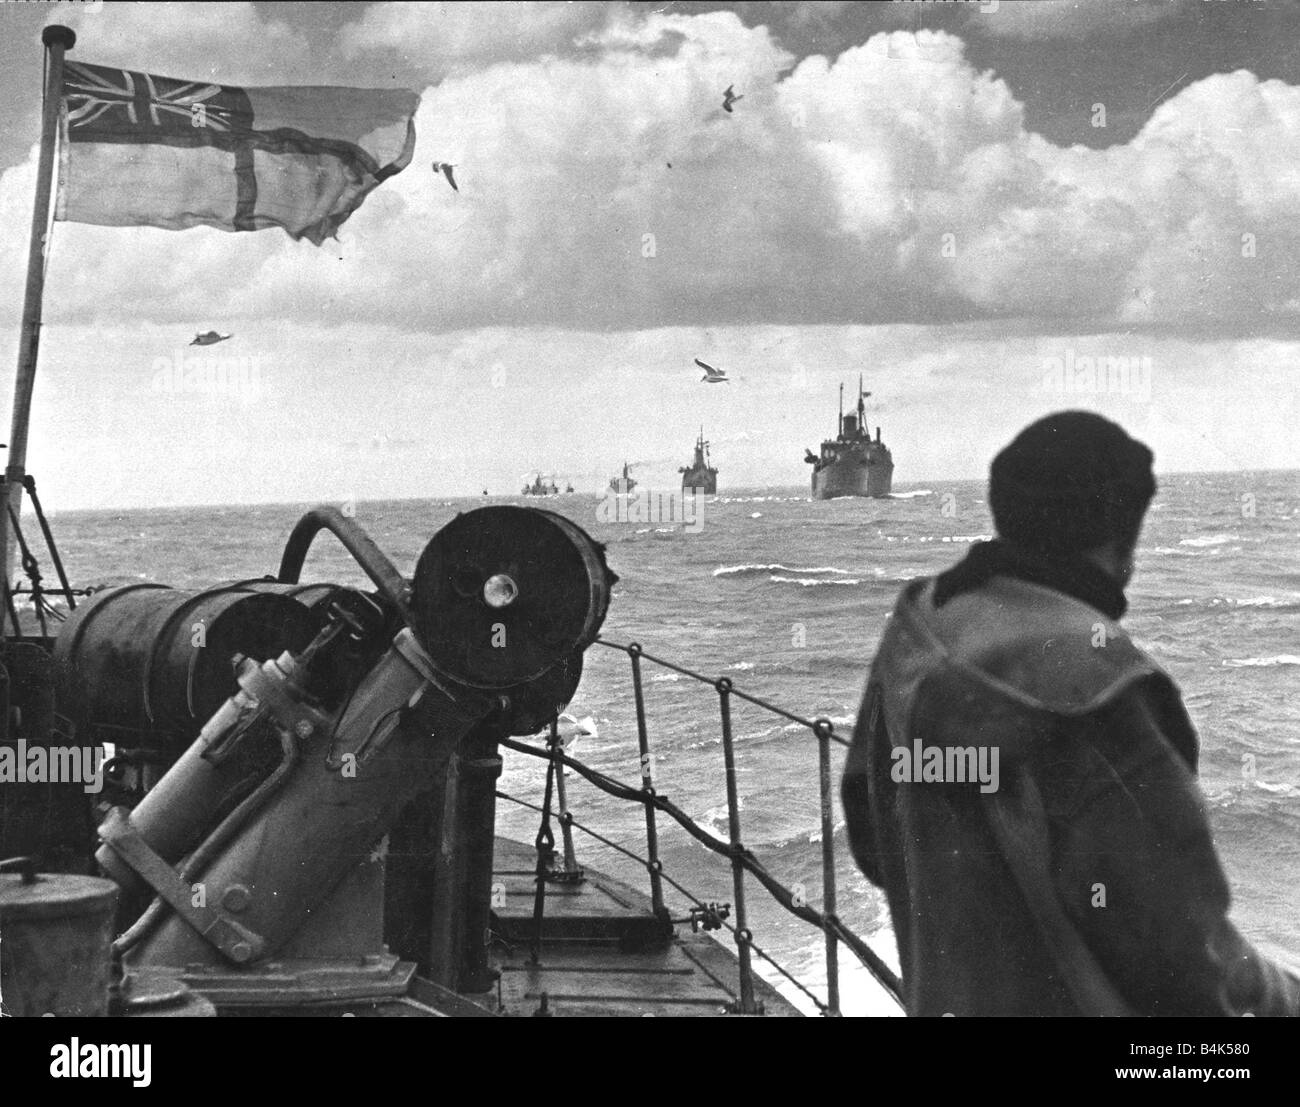 Ein Schiff-Konvoi auf dem Weg segeln durch die Nordsee Segler zweiten Weltkrieg WW 2 WW II Versand Kriegsschiffe englische Flagge Meer Kriegsführung März 1943 der 1940er Jahre Mirrorpix 15 3 1943 Stockfoto